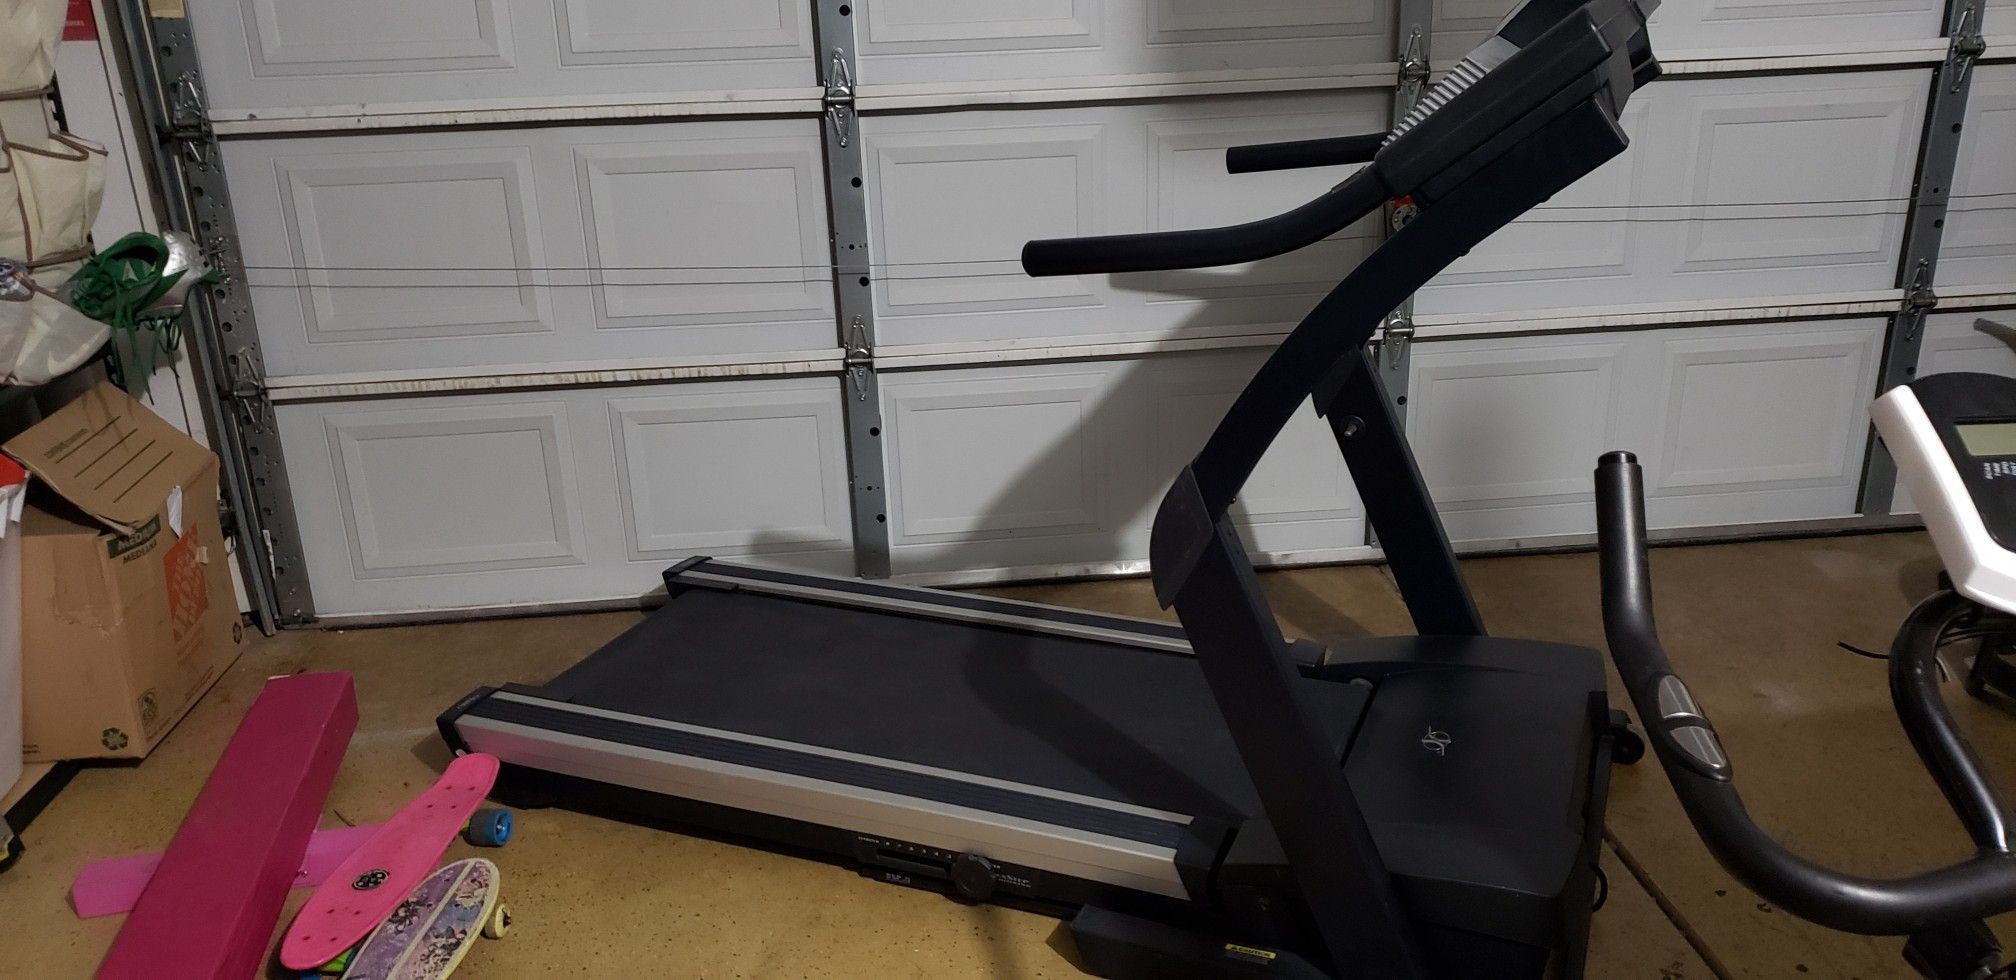 nordictrack treadmill e3800